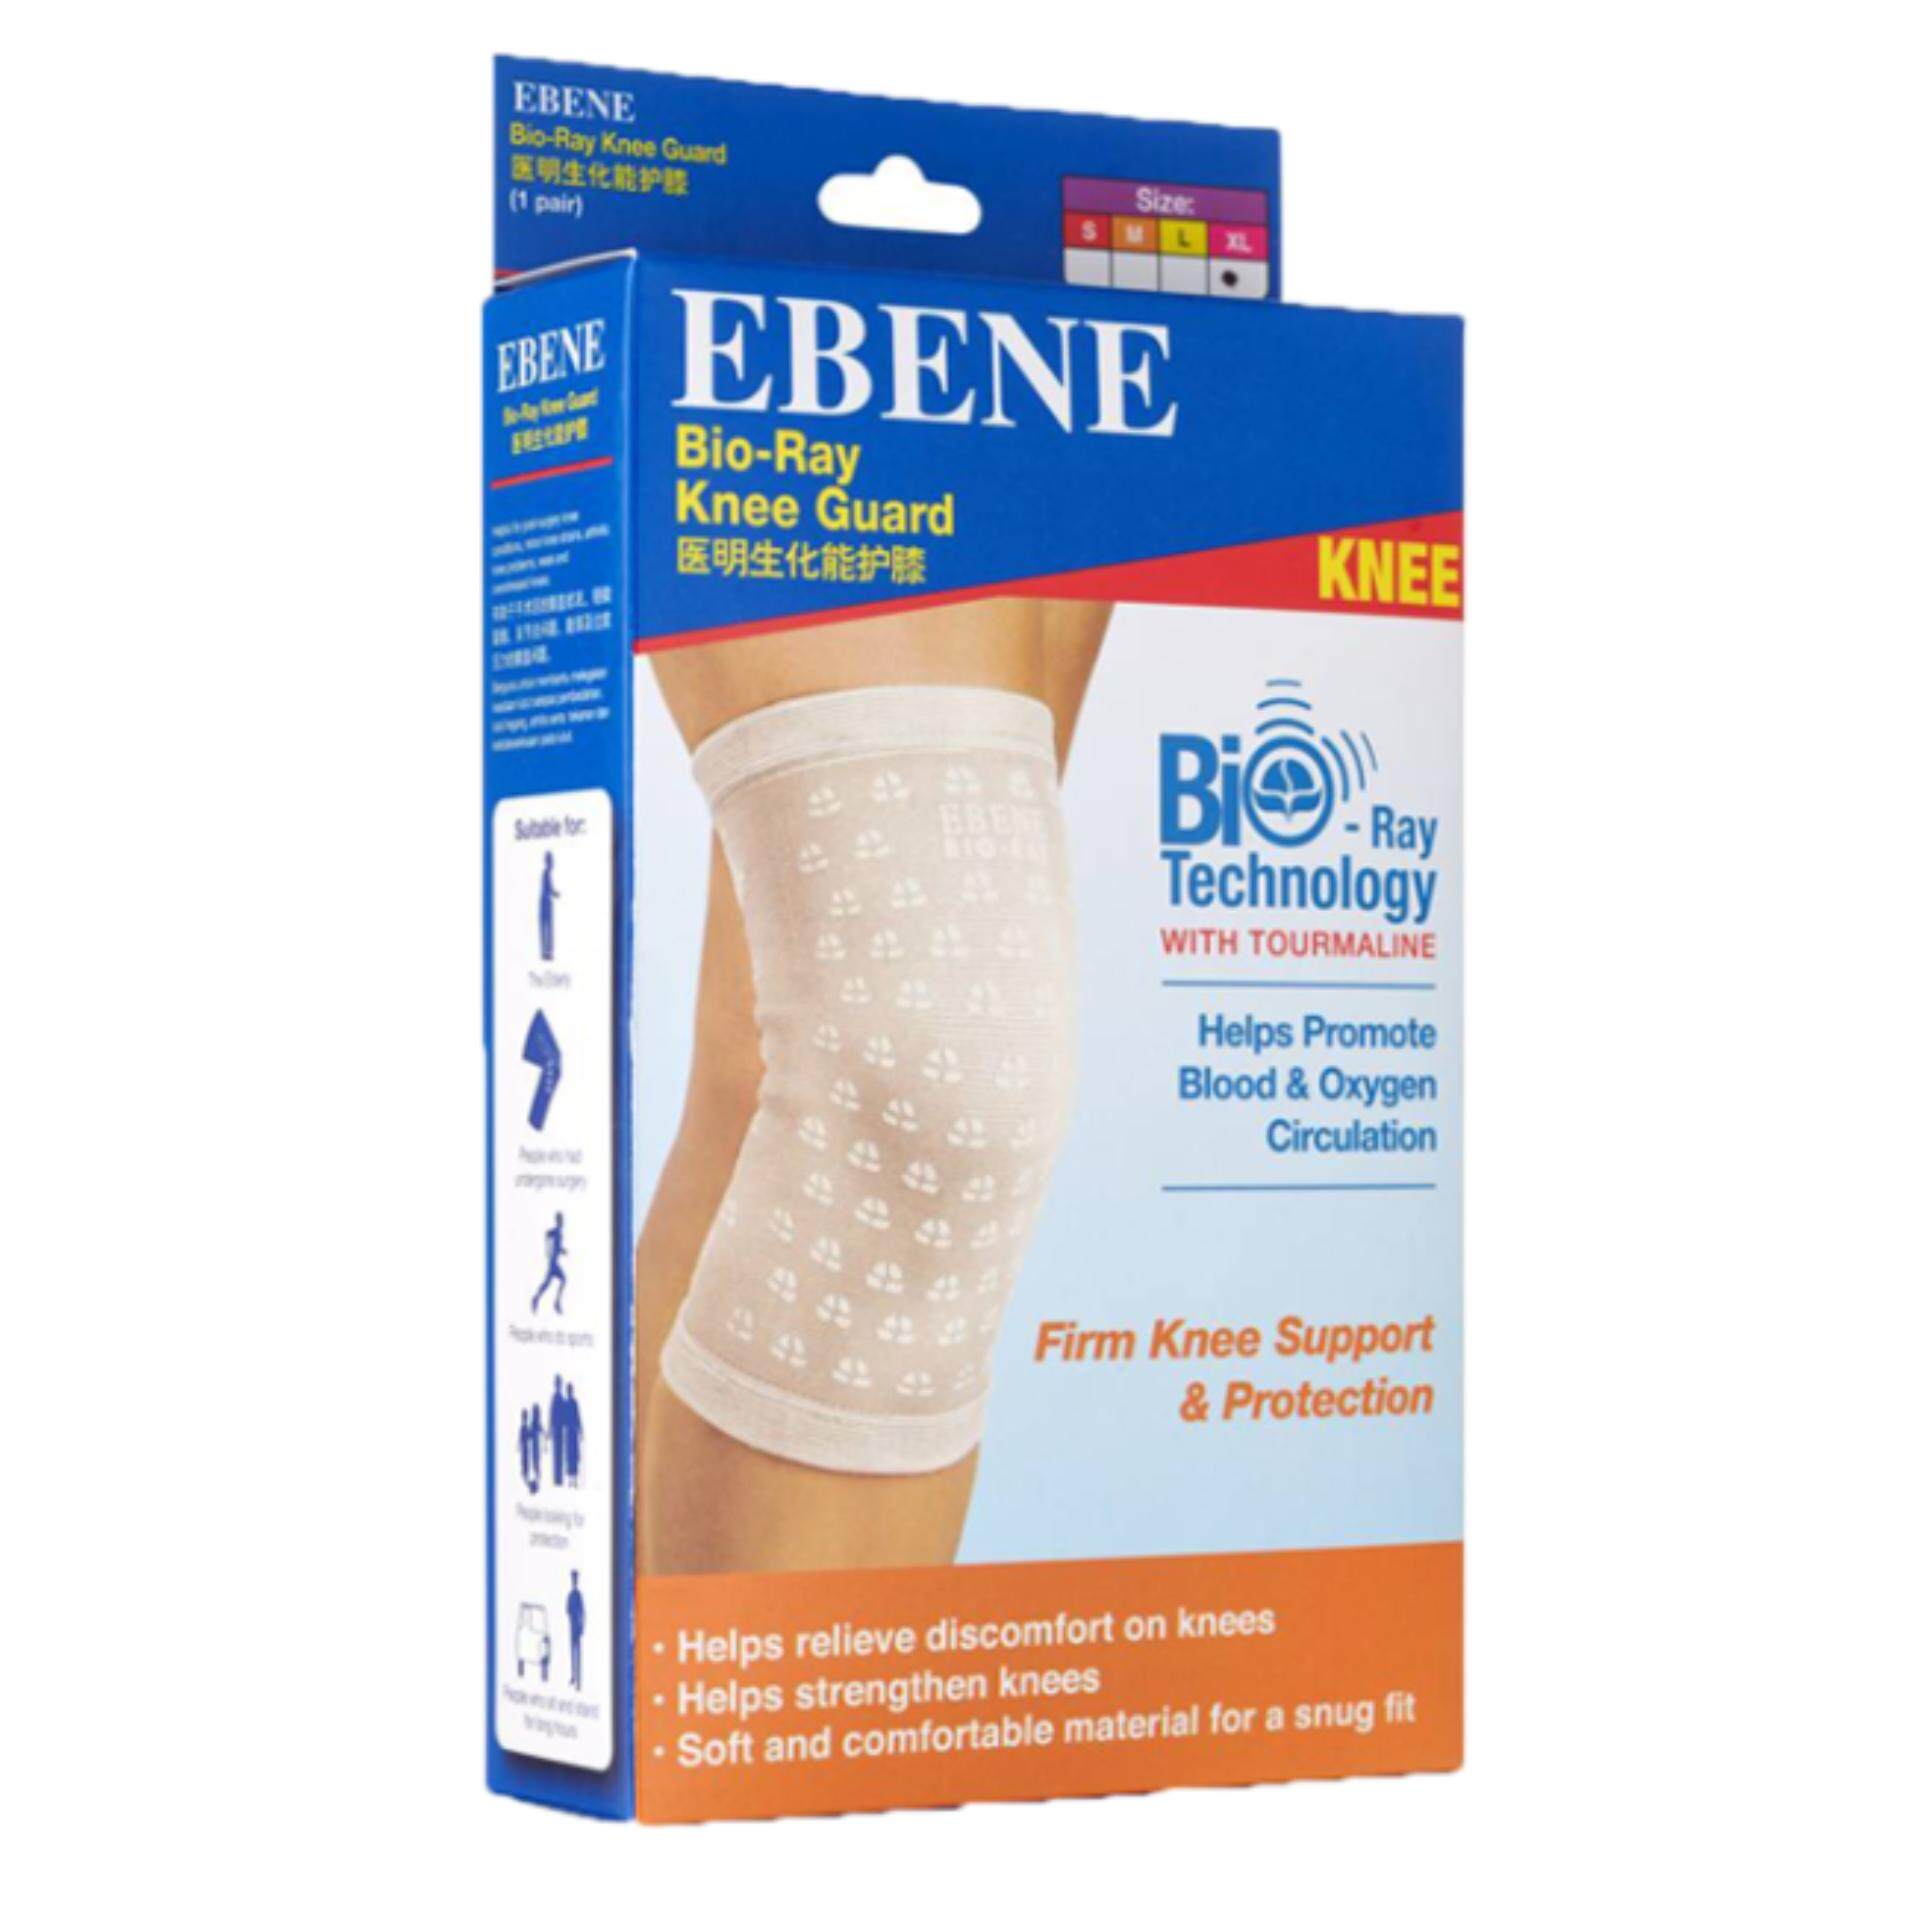 EBENE Bio-Ray Knee Guard 1 pair (S)